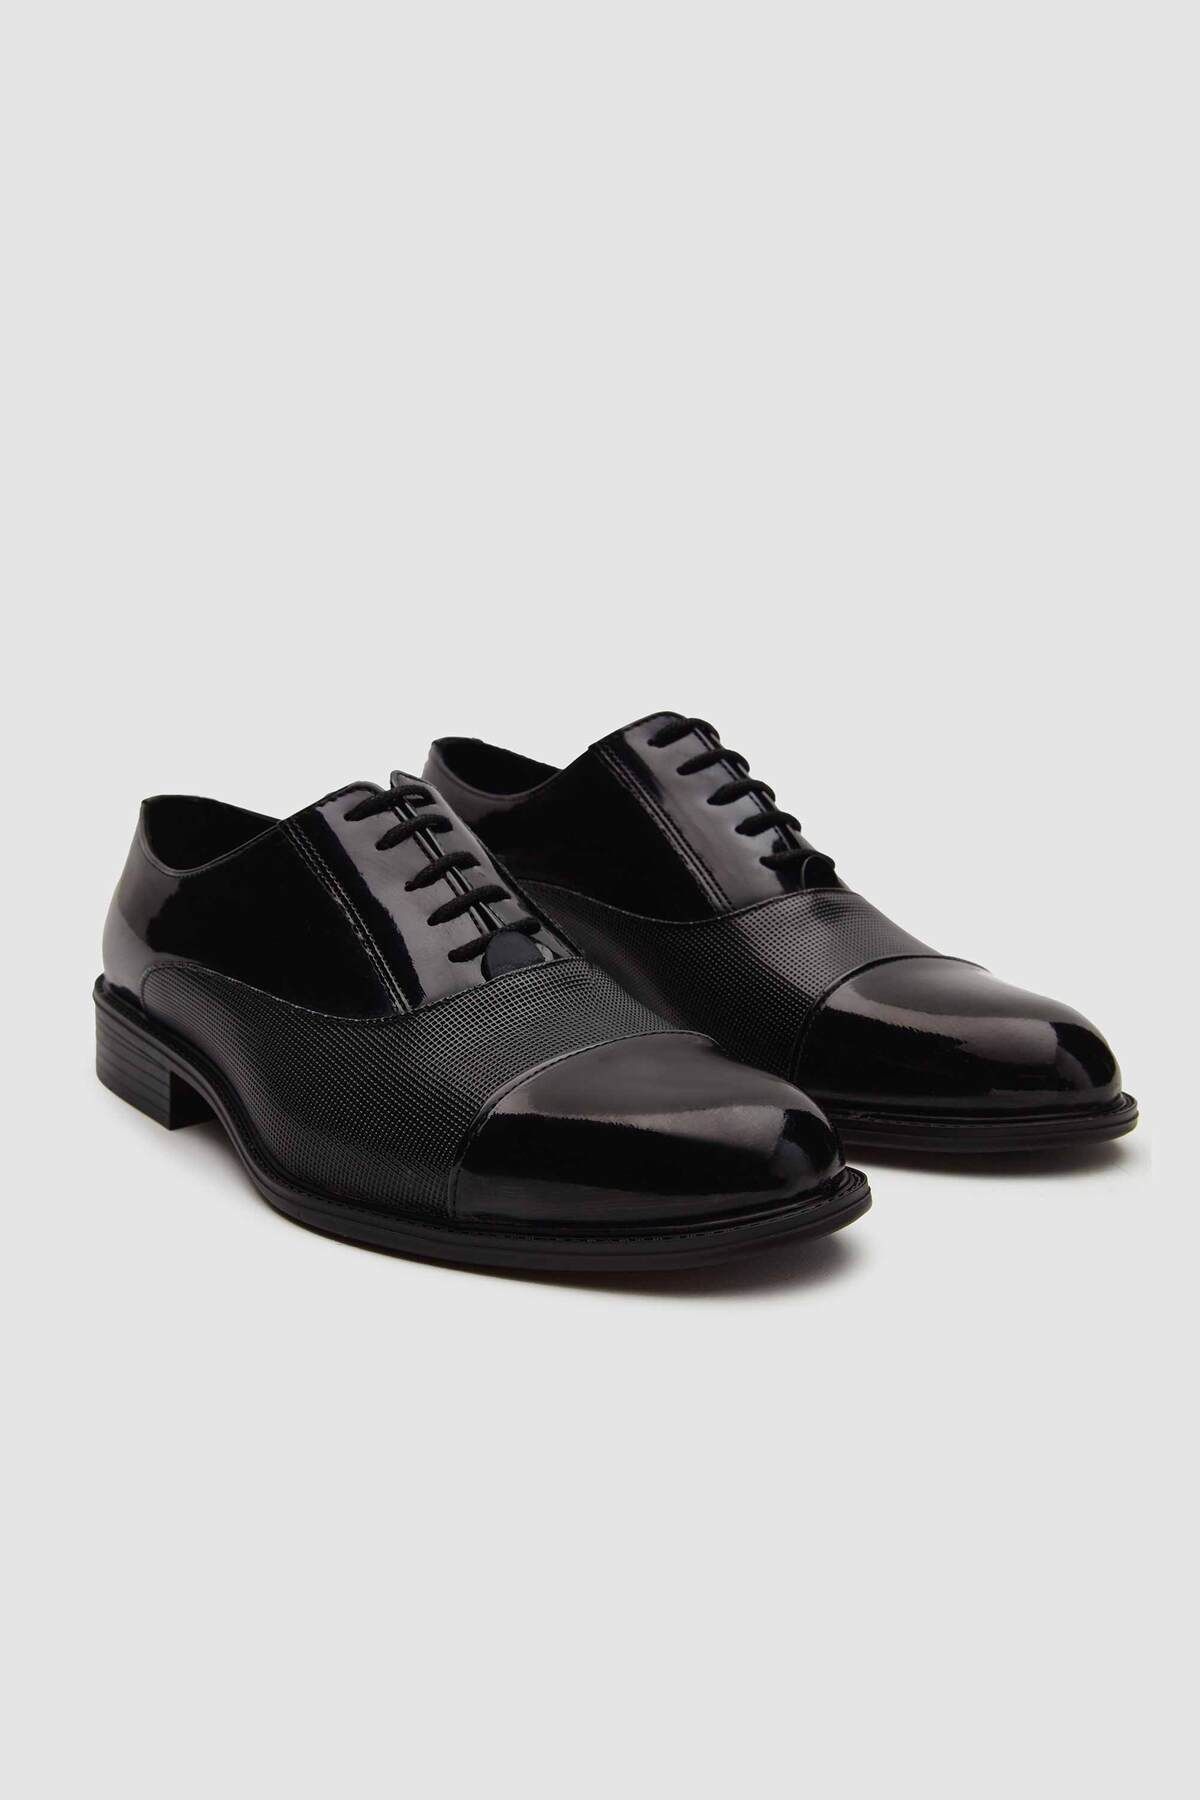 D'S Damat Siyah Klasik Smokin Ayakkabı